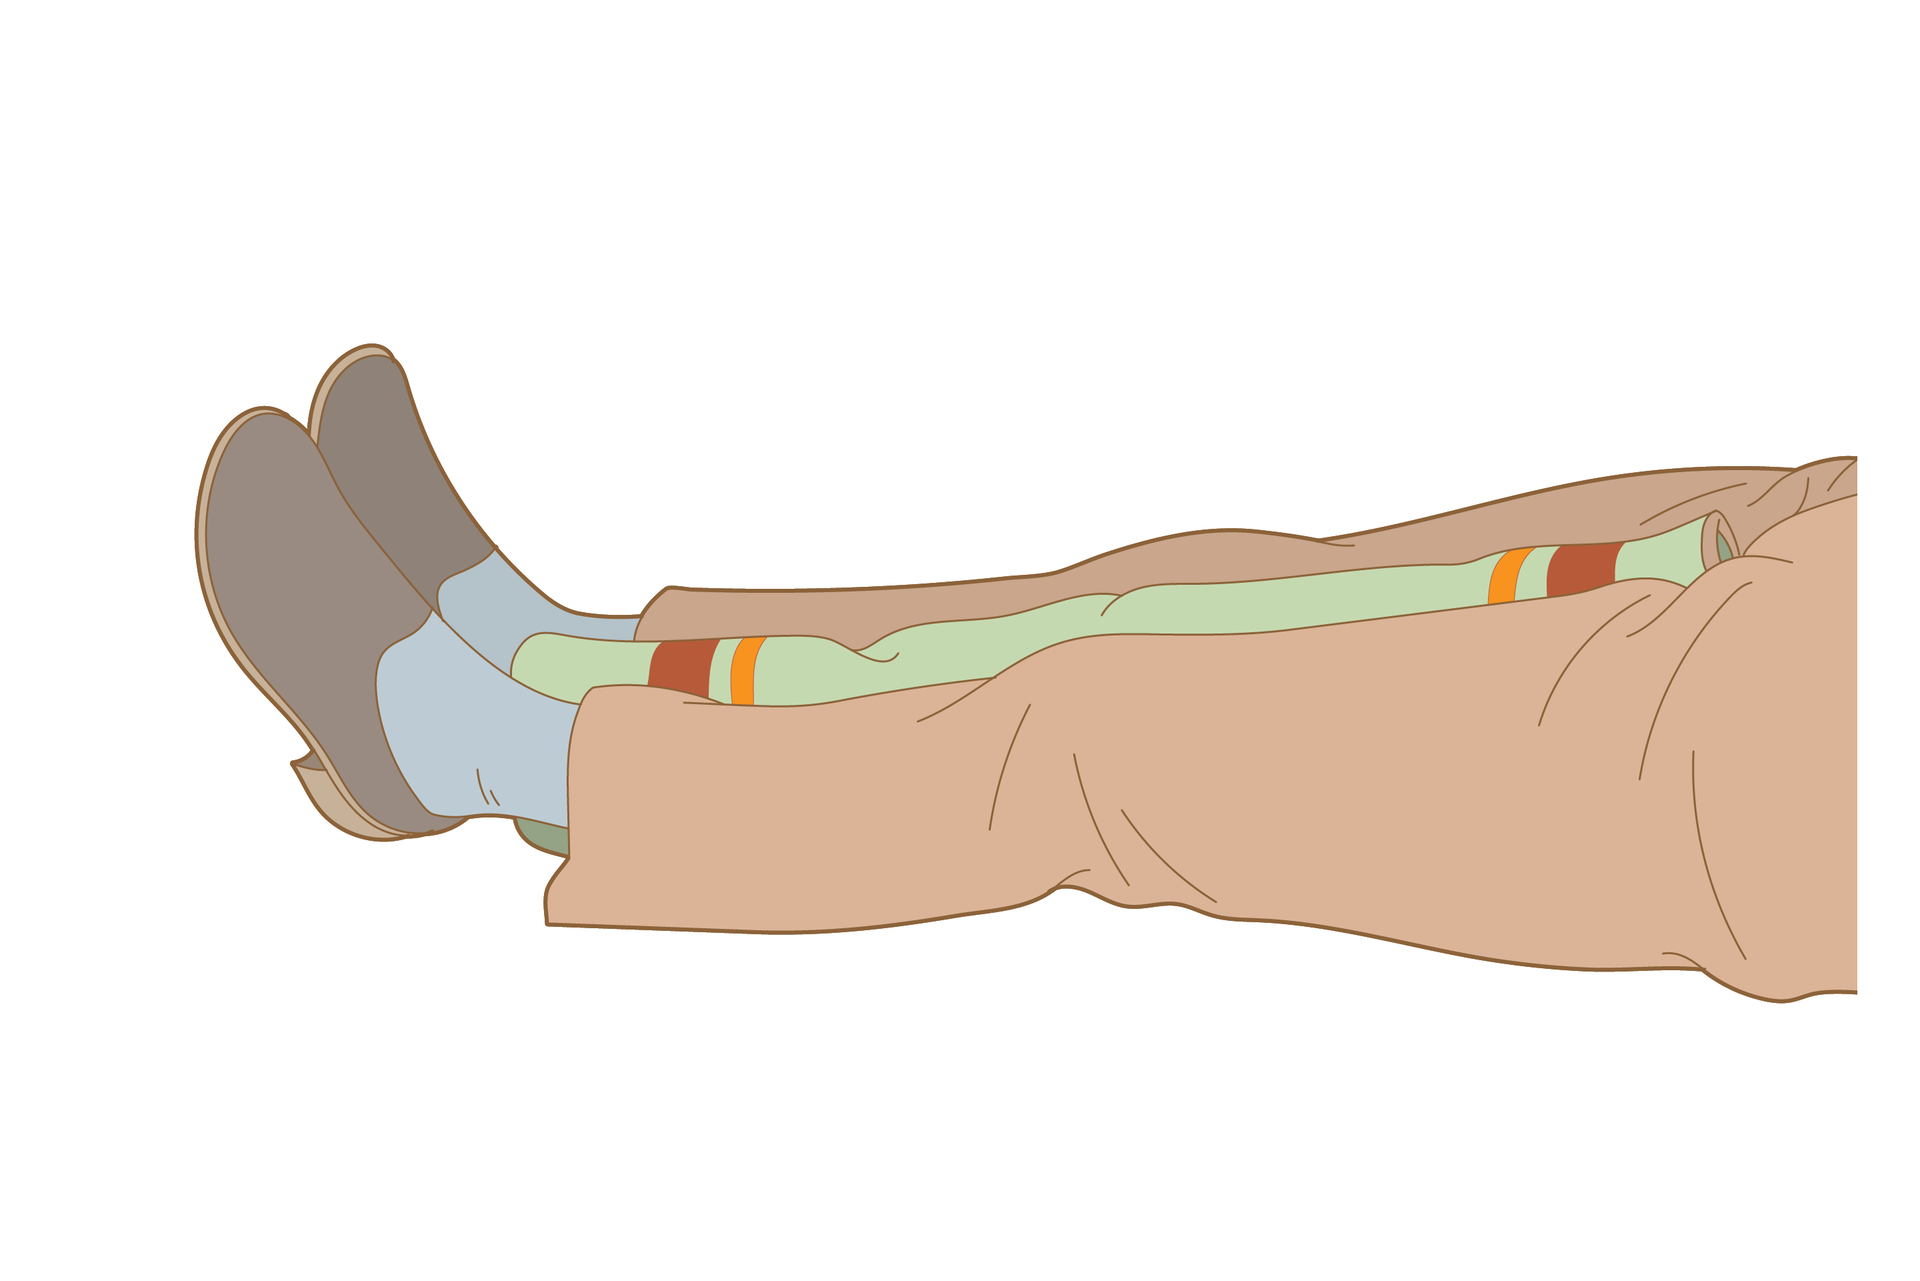 Galeria składa się z sześciu ilustracji prezentującej dwa sposoby unieruchamiania jednej nogi lub obu nóg poszkodowanego. Rysunek pierwszy przedstawia pierwszy etap unieruchamiania za pomocą koca. Na ilustracji poziomo leżące nogi poszkodowanego od pasa w dół, skierowane stopami w lewo. Ubranie kompletne, obie nogi równolegle do siebie. Pomiędzy nogami od stóp do krocza włożony zwinięty koc.